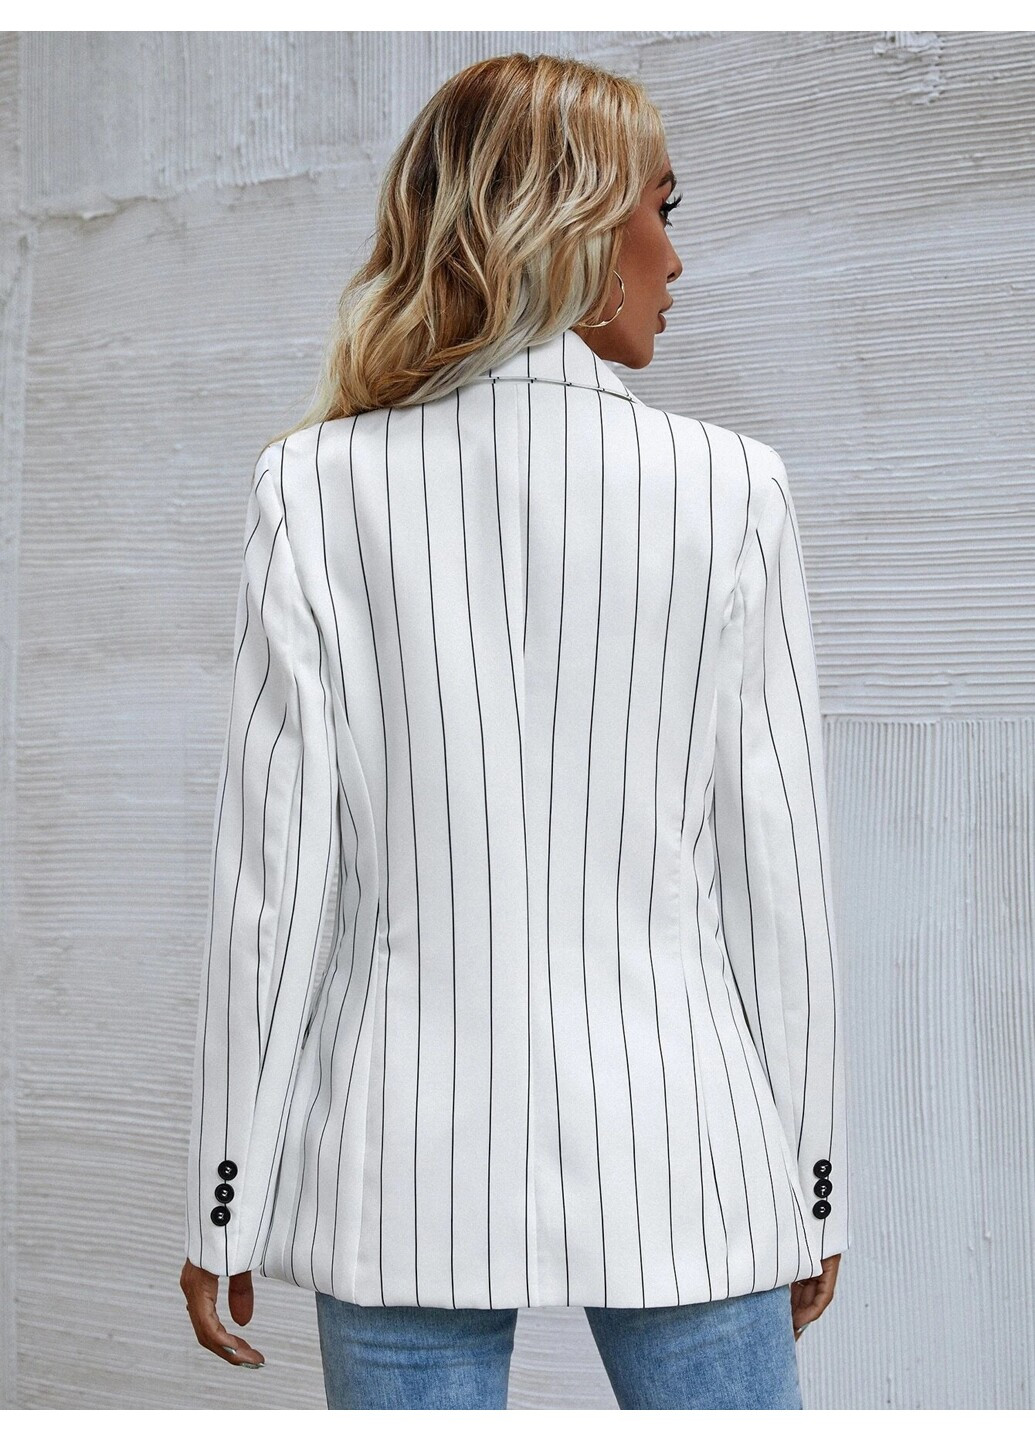 Белый женский блейзер женский удлиненный в полоску style Berni Fashion полосатый - демисезонный